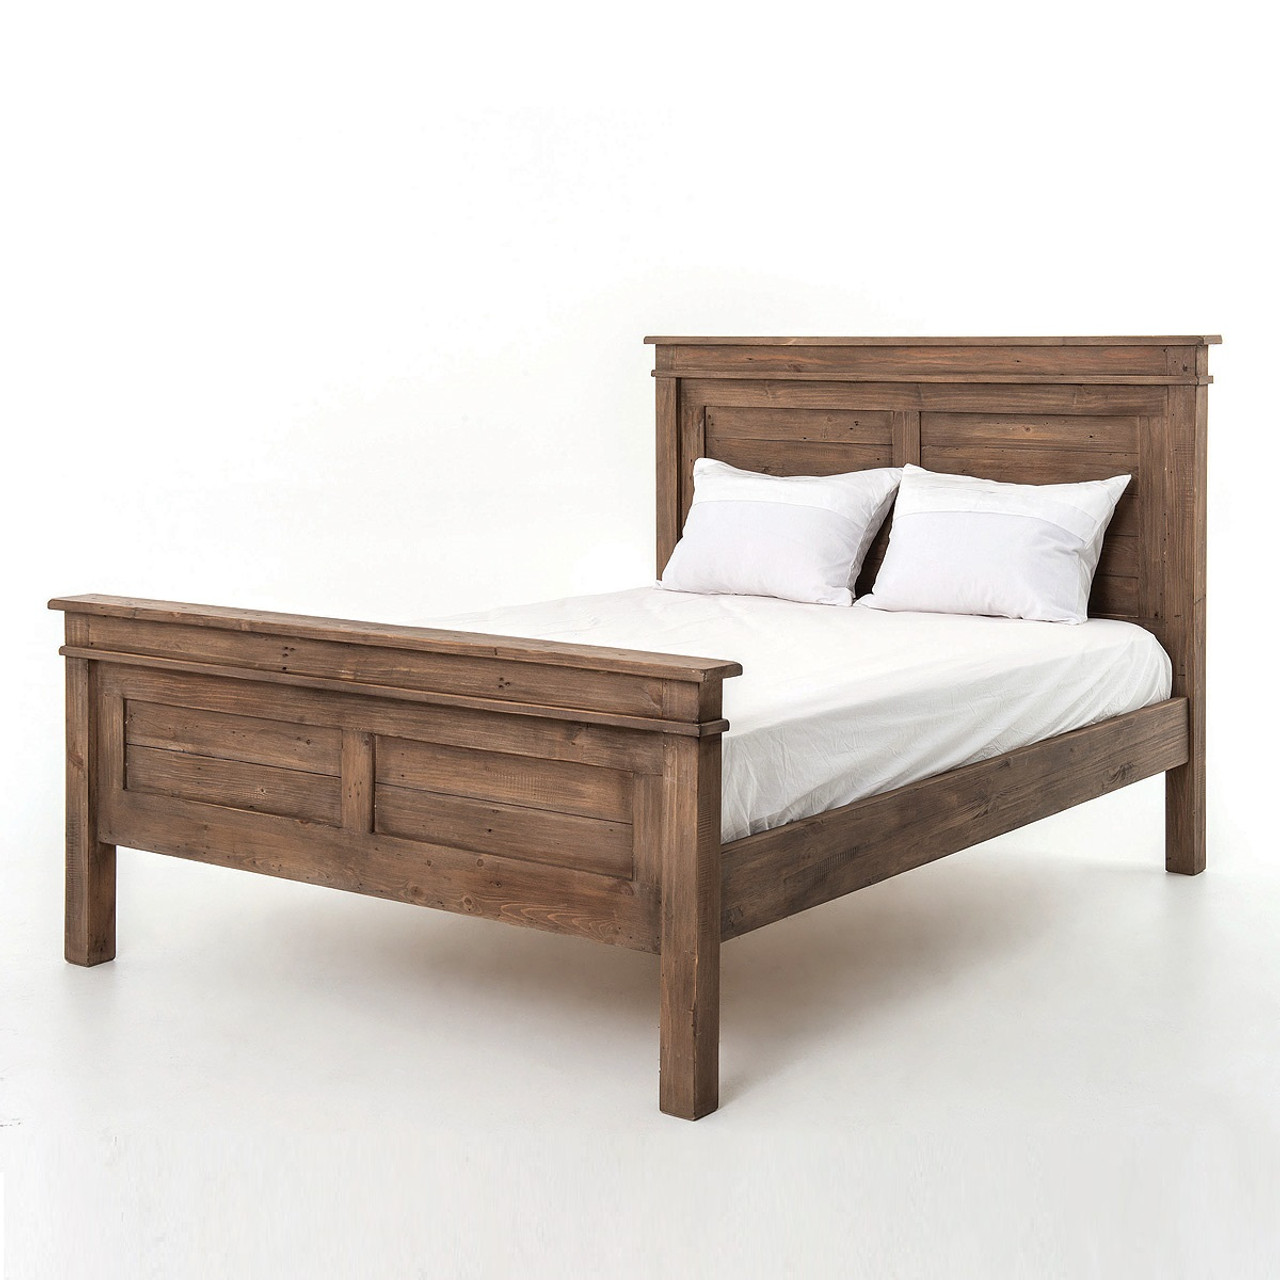 Sierra Reclaimed Wood Queen Size Platform Bed | Zin Home